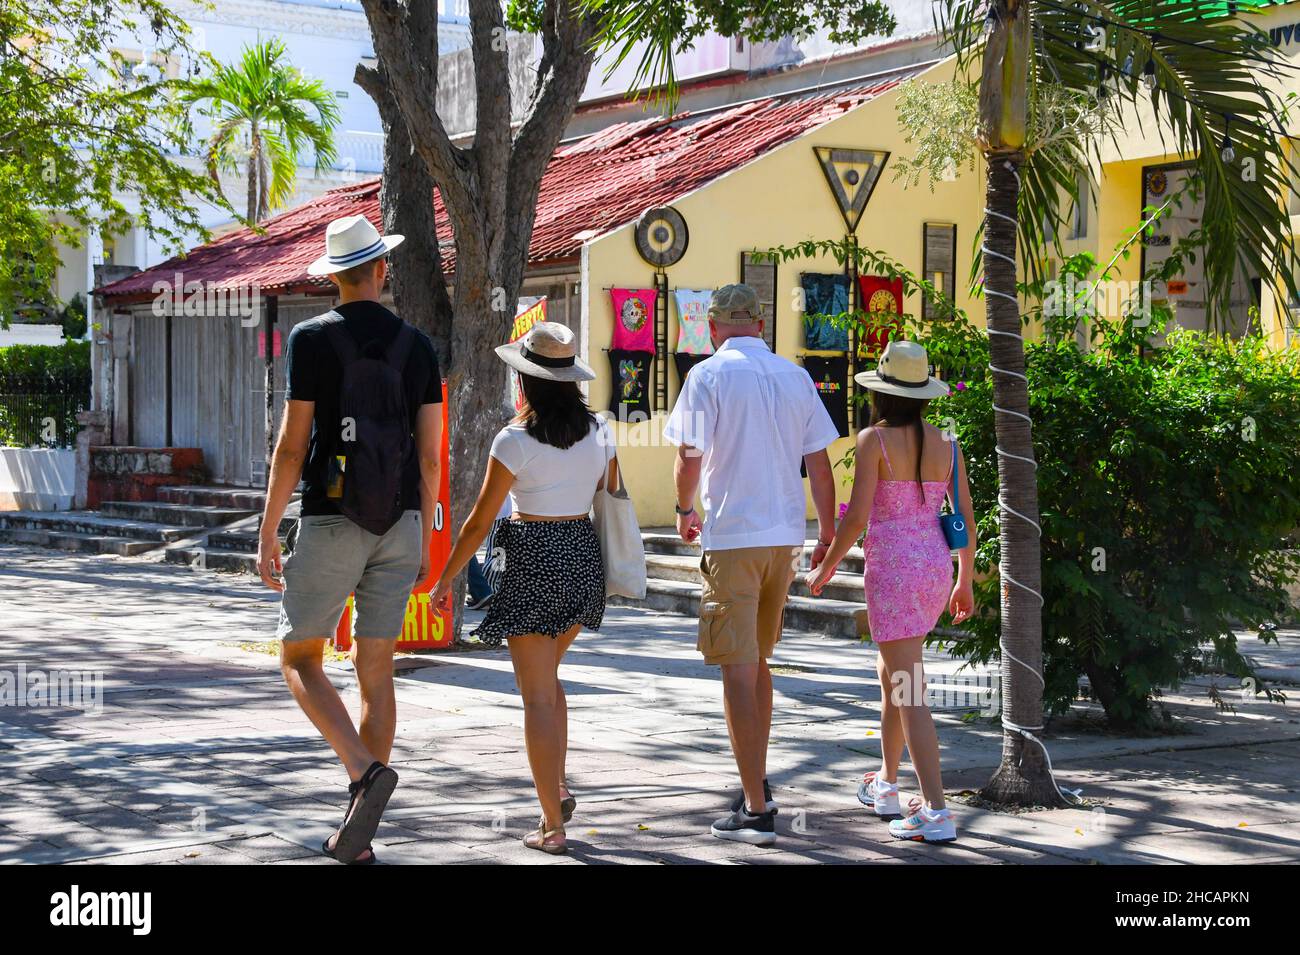 Tourists walking, Paseo de Montejo, Merida Mexico Stock Photo